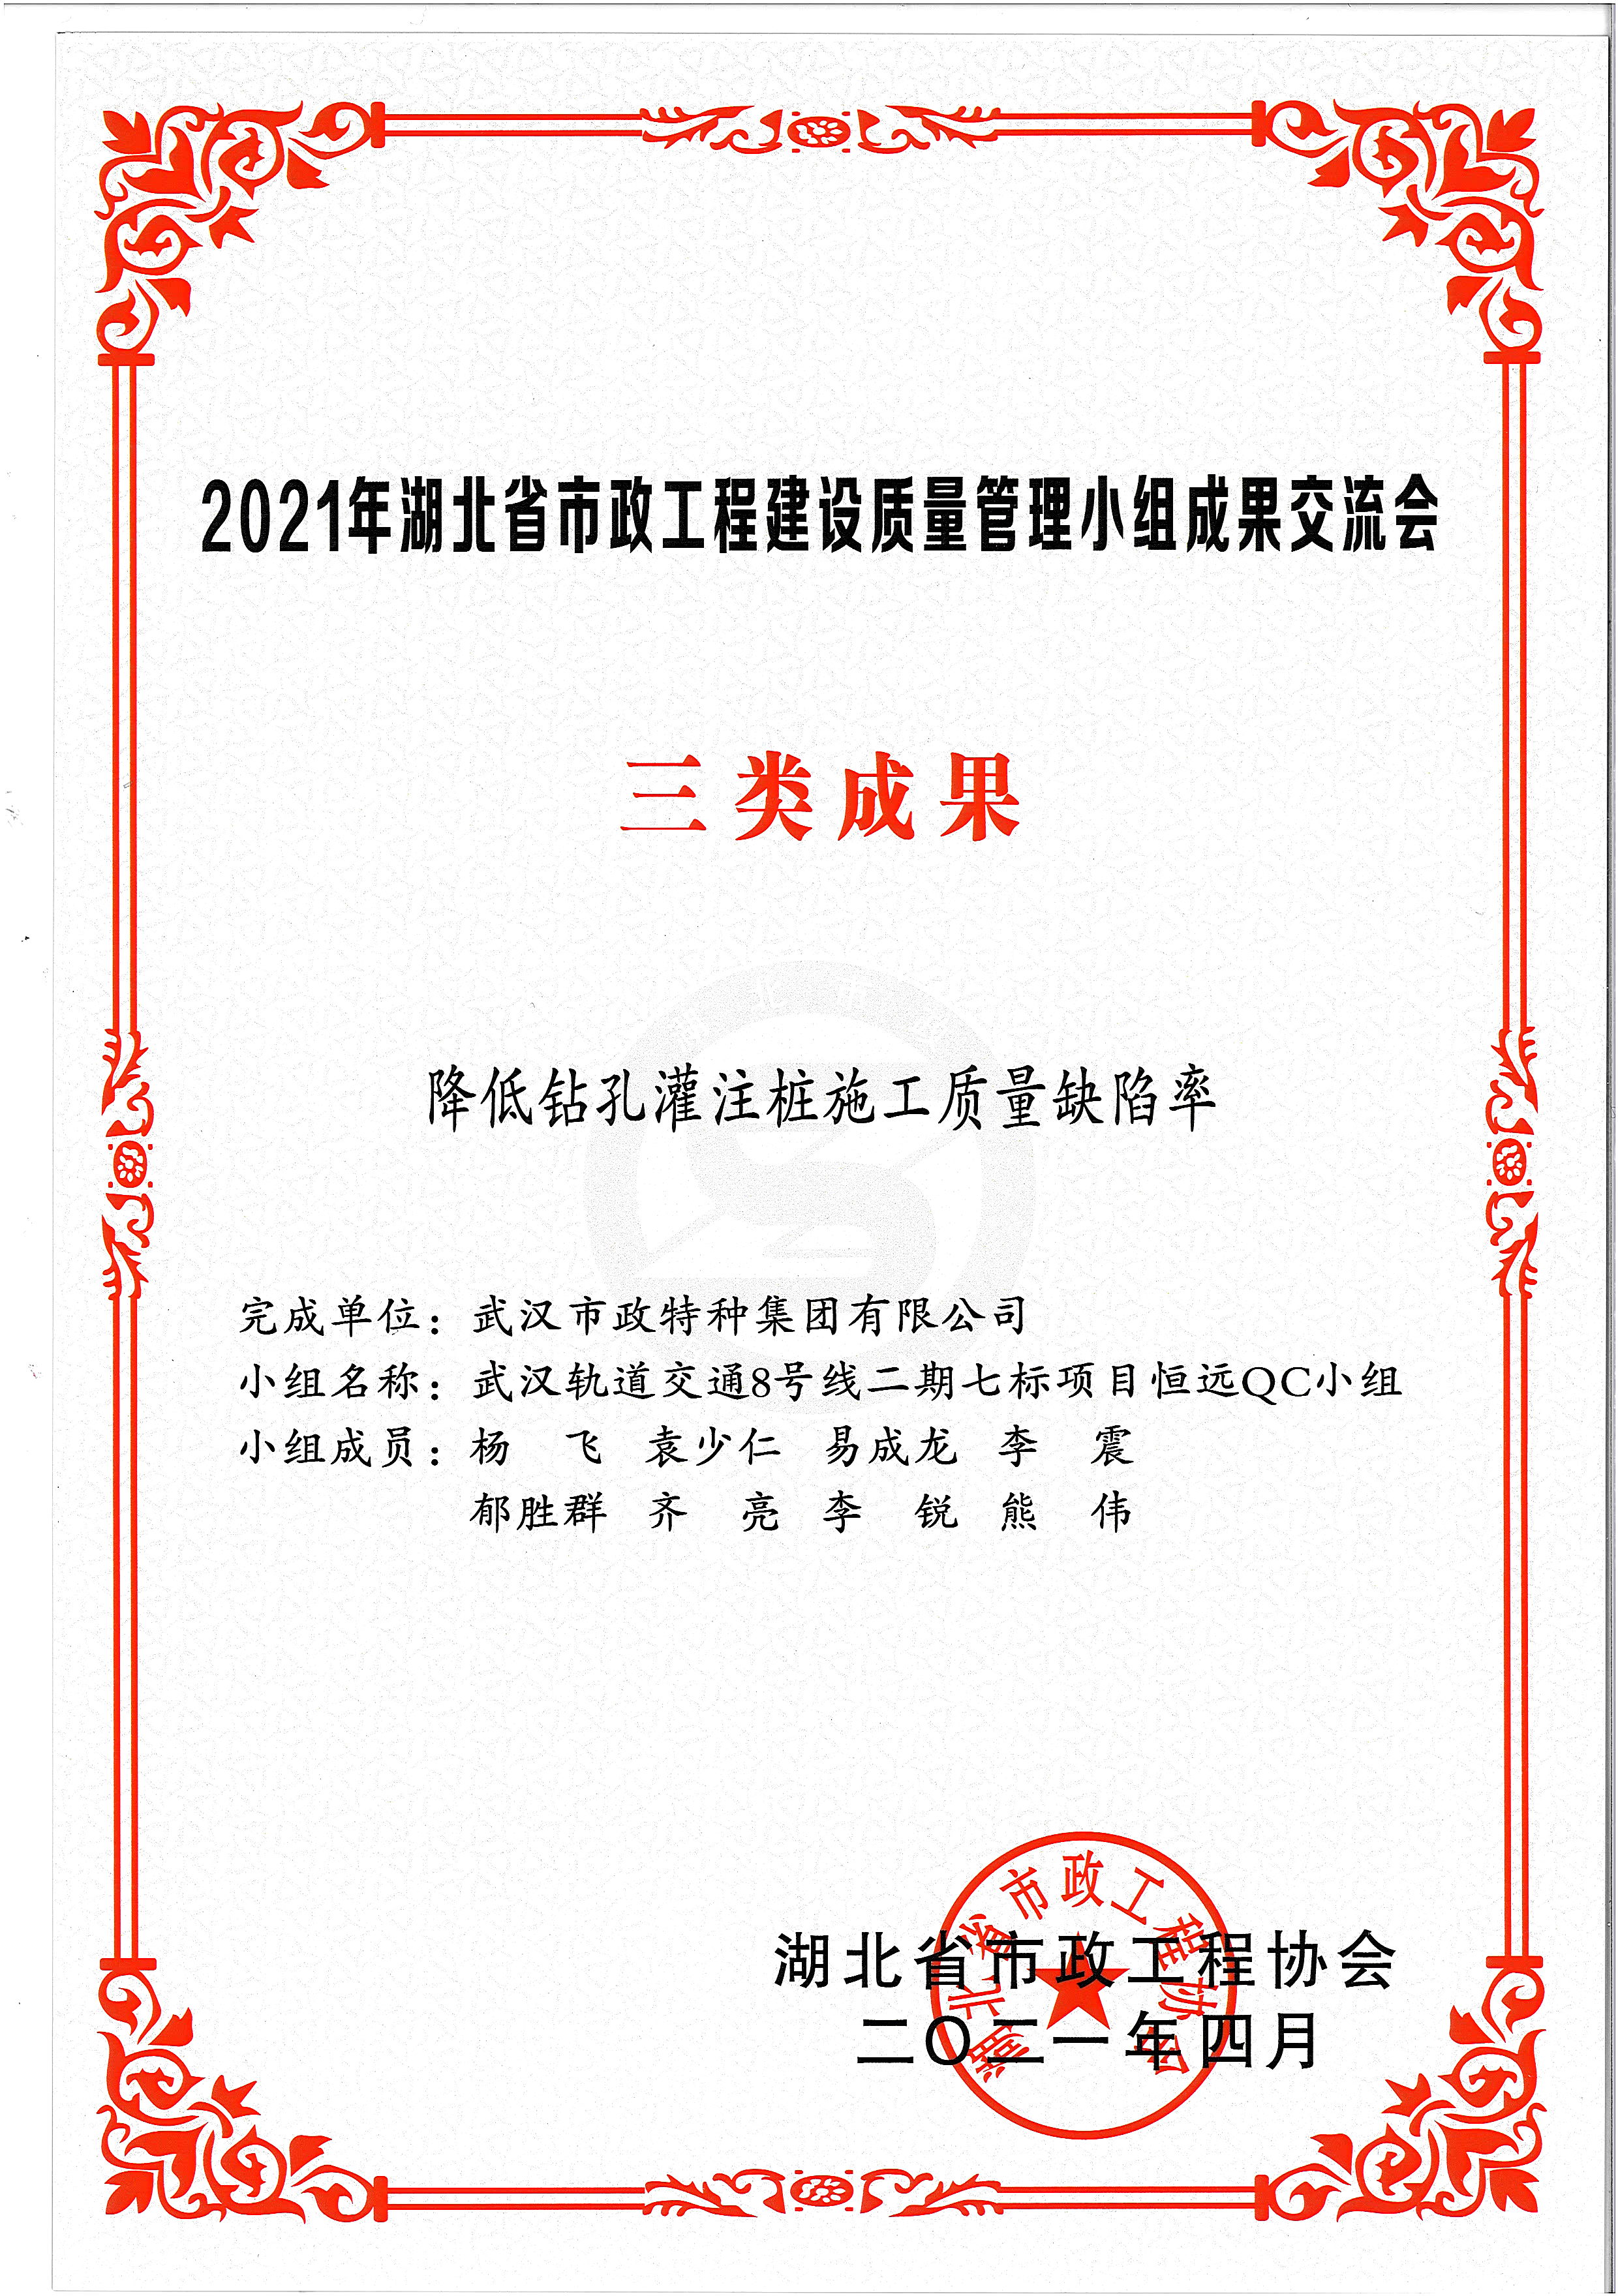 湖北省市*协会QC成果奖——降低钻孔灌注桩施工质量缺陷率